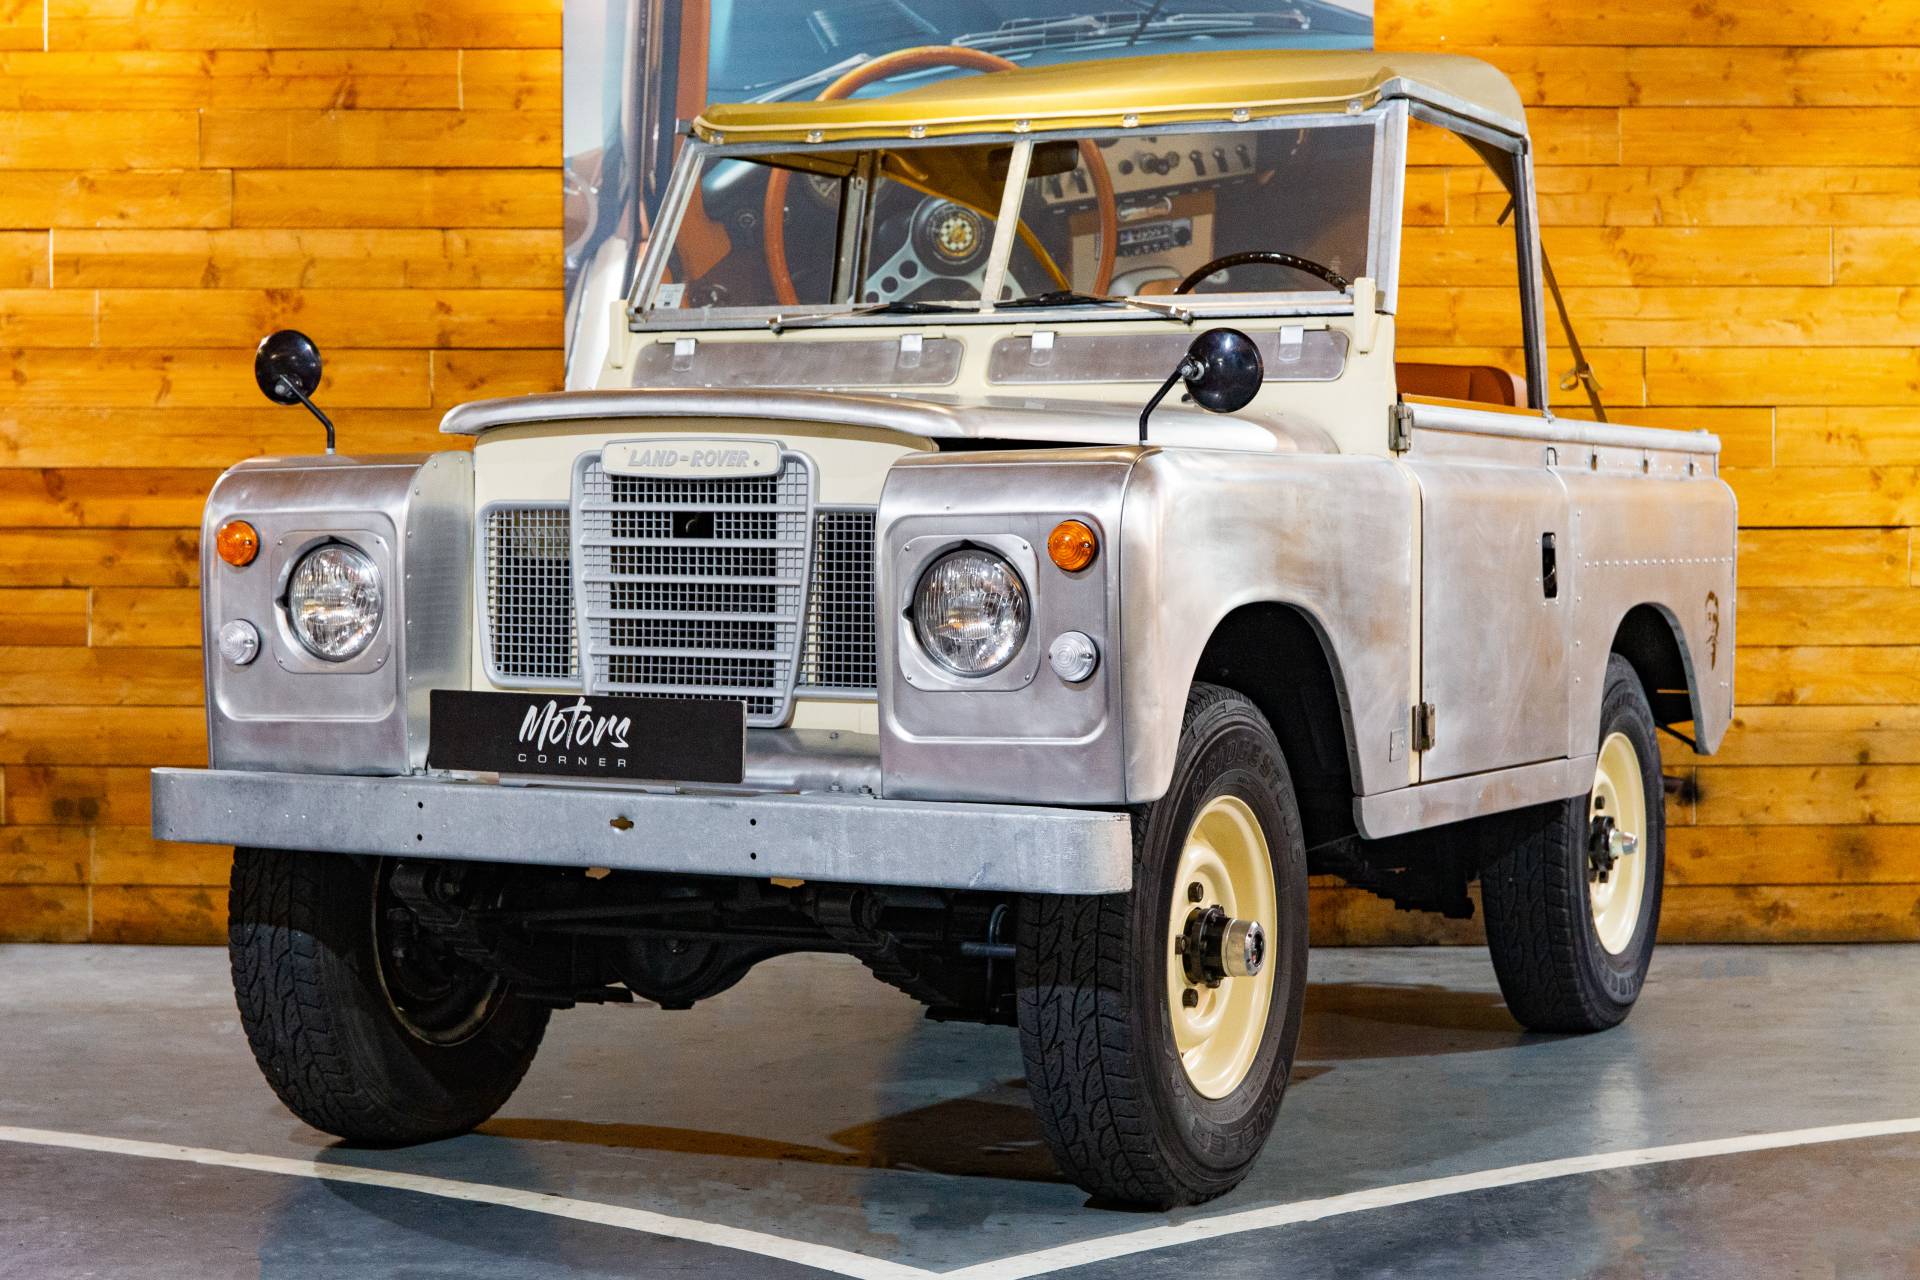 afbreken Concurreren weefgetouw Te koop: Land Rover 88 (1979) aangeboden voor € 29.990